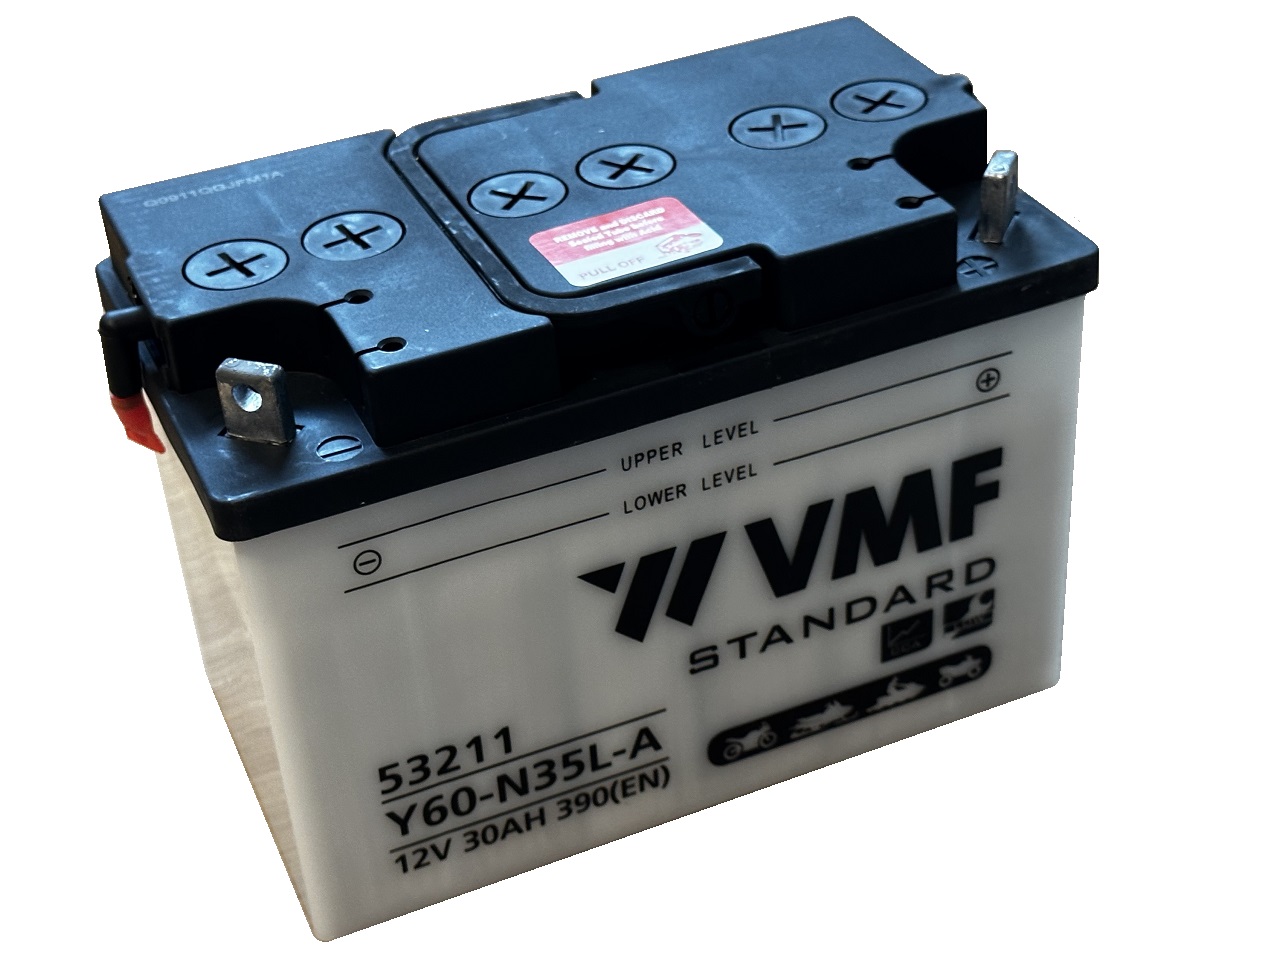 VMF 53211 Y60-N35L-A / 12V 30AH 390(EN) compleet met zuur - Clicca l'immagine per chiudere